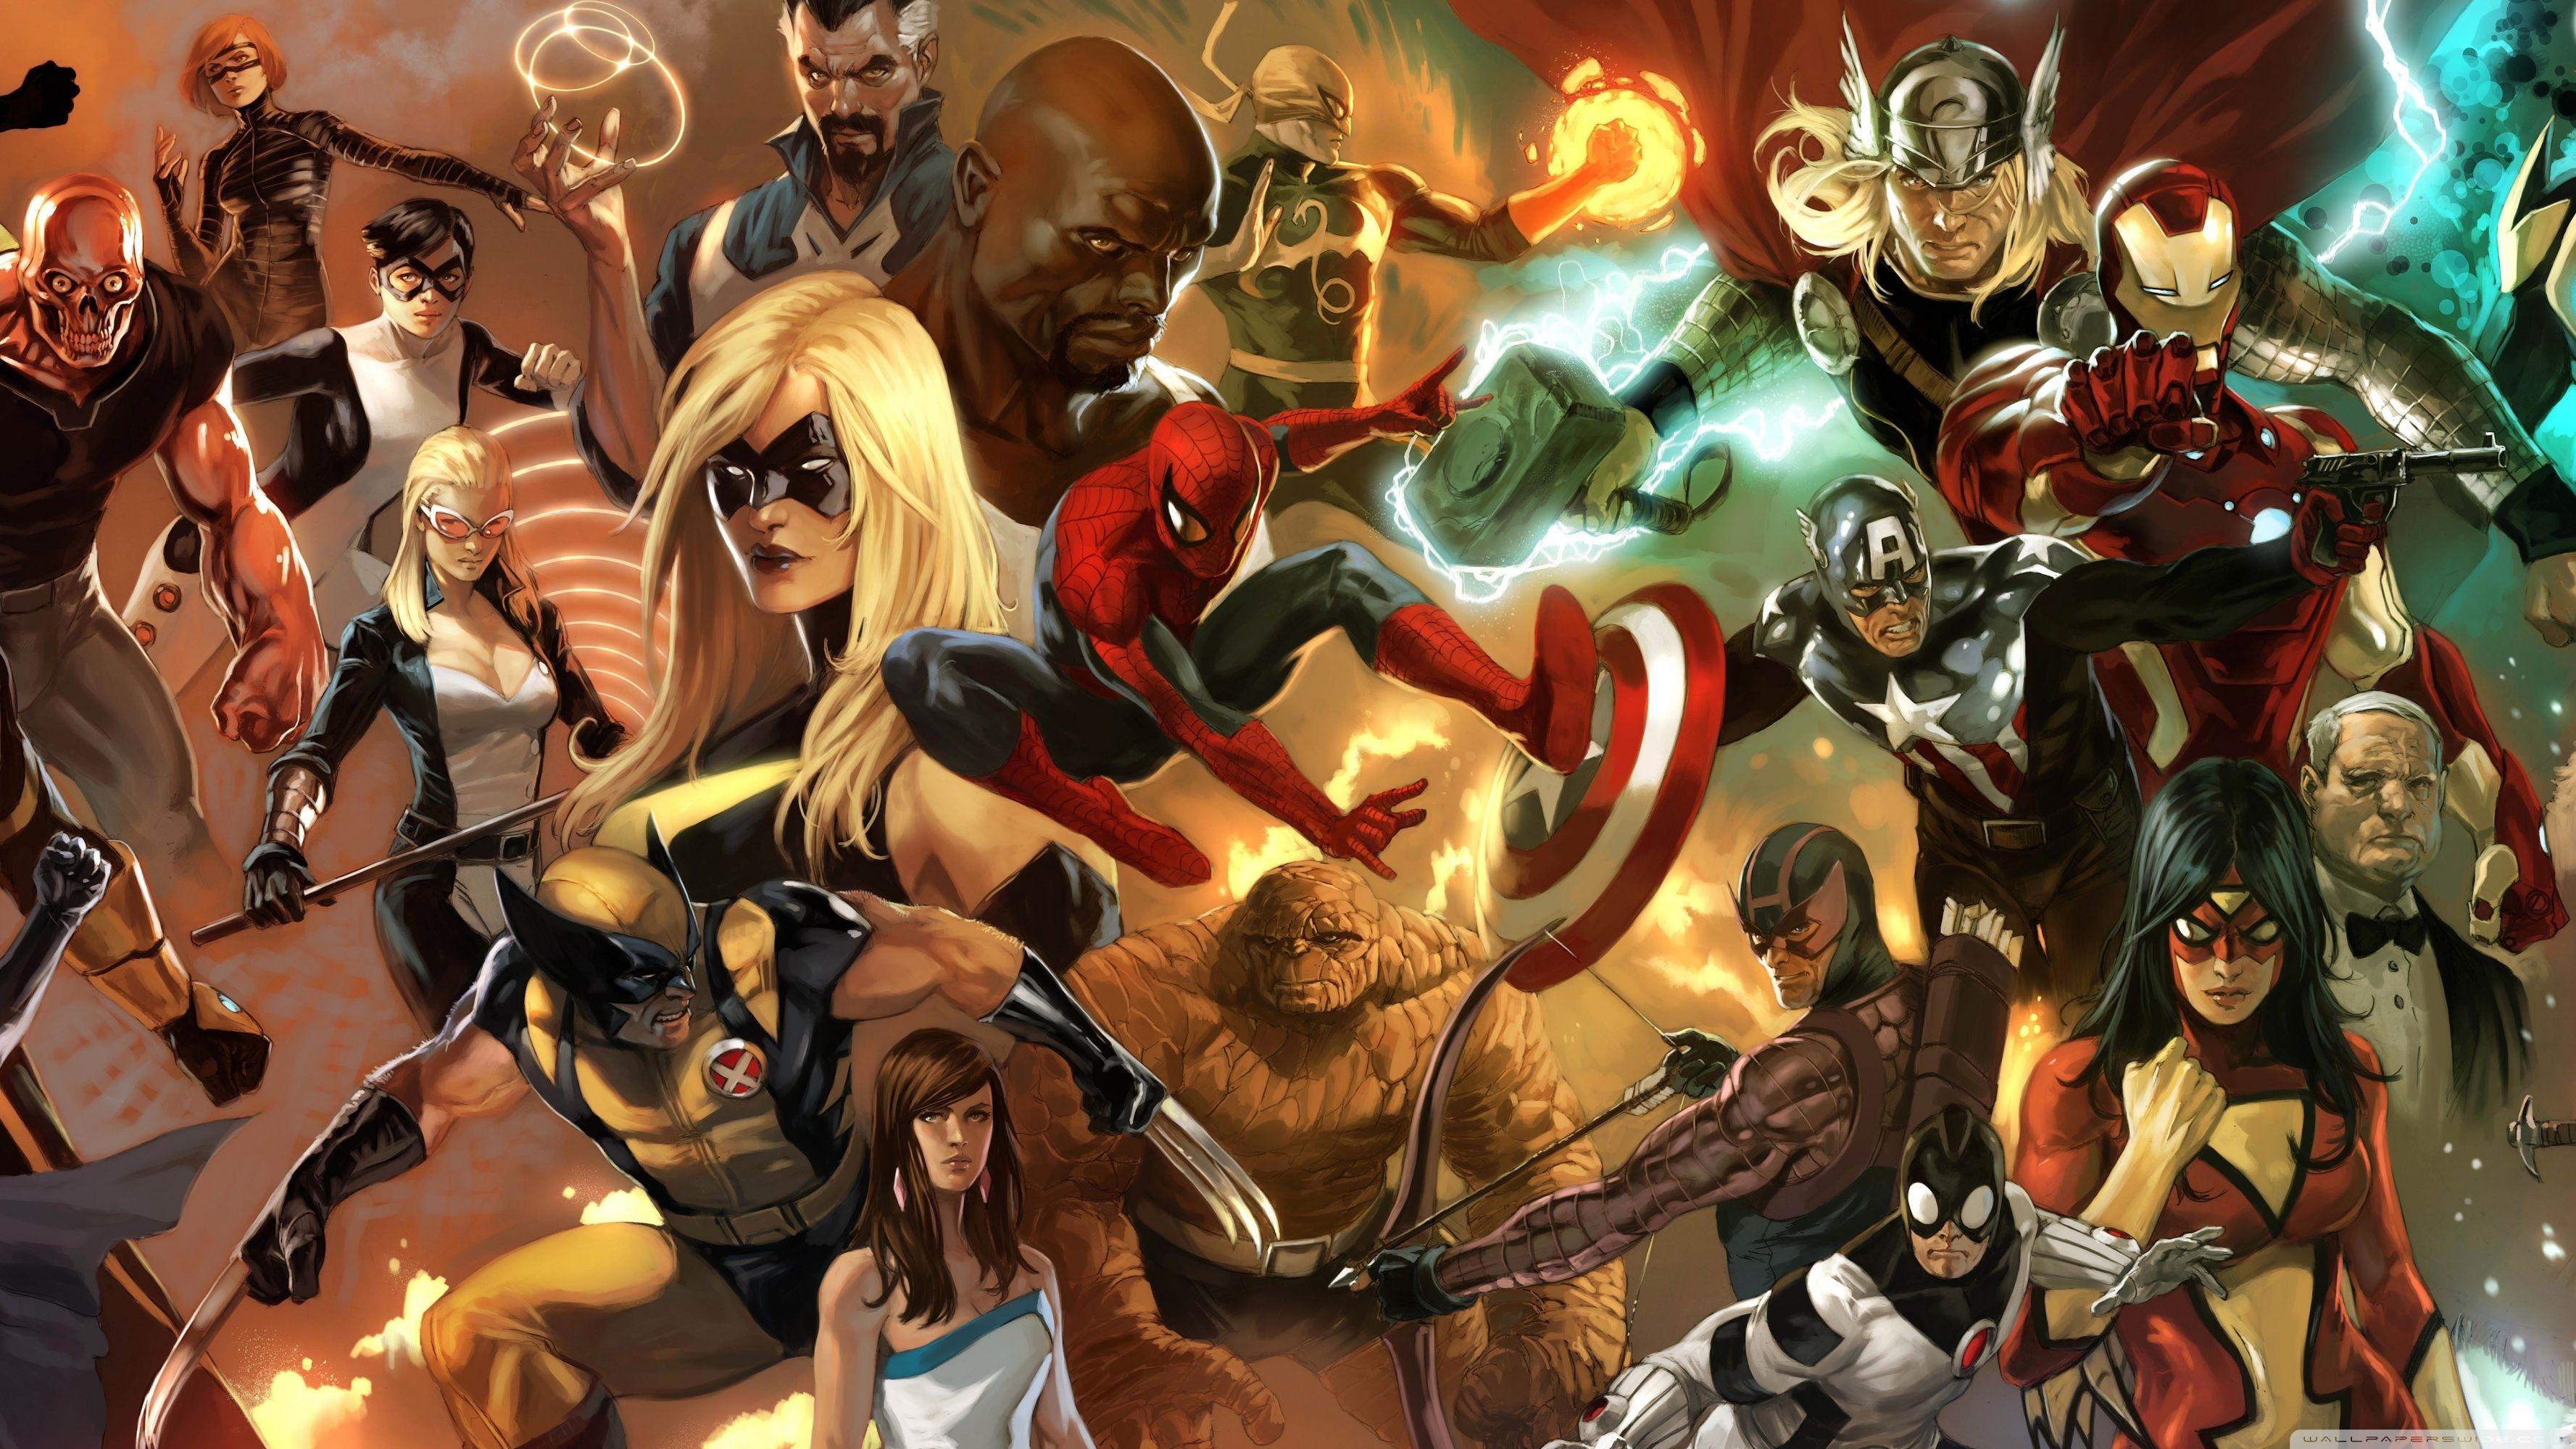 4k Resolution Aesthetic Avengers Wallpaper